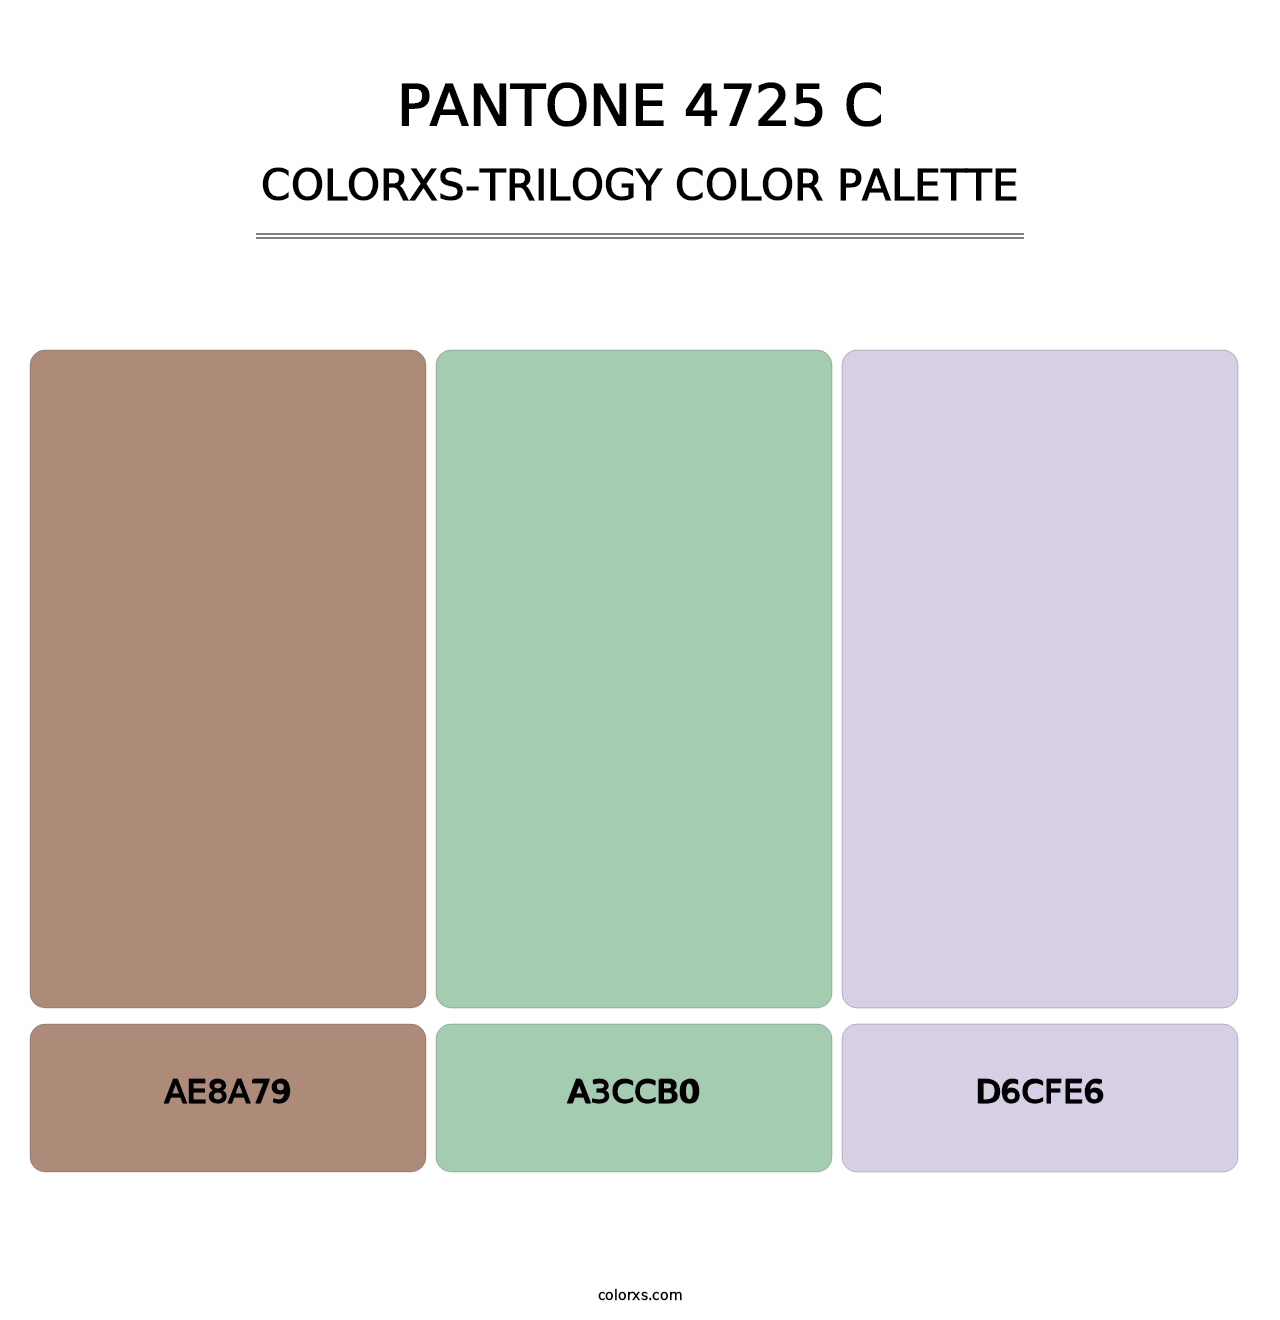 PANTONE 4725 C - Colorxs Trilogy Palette